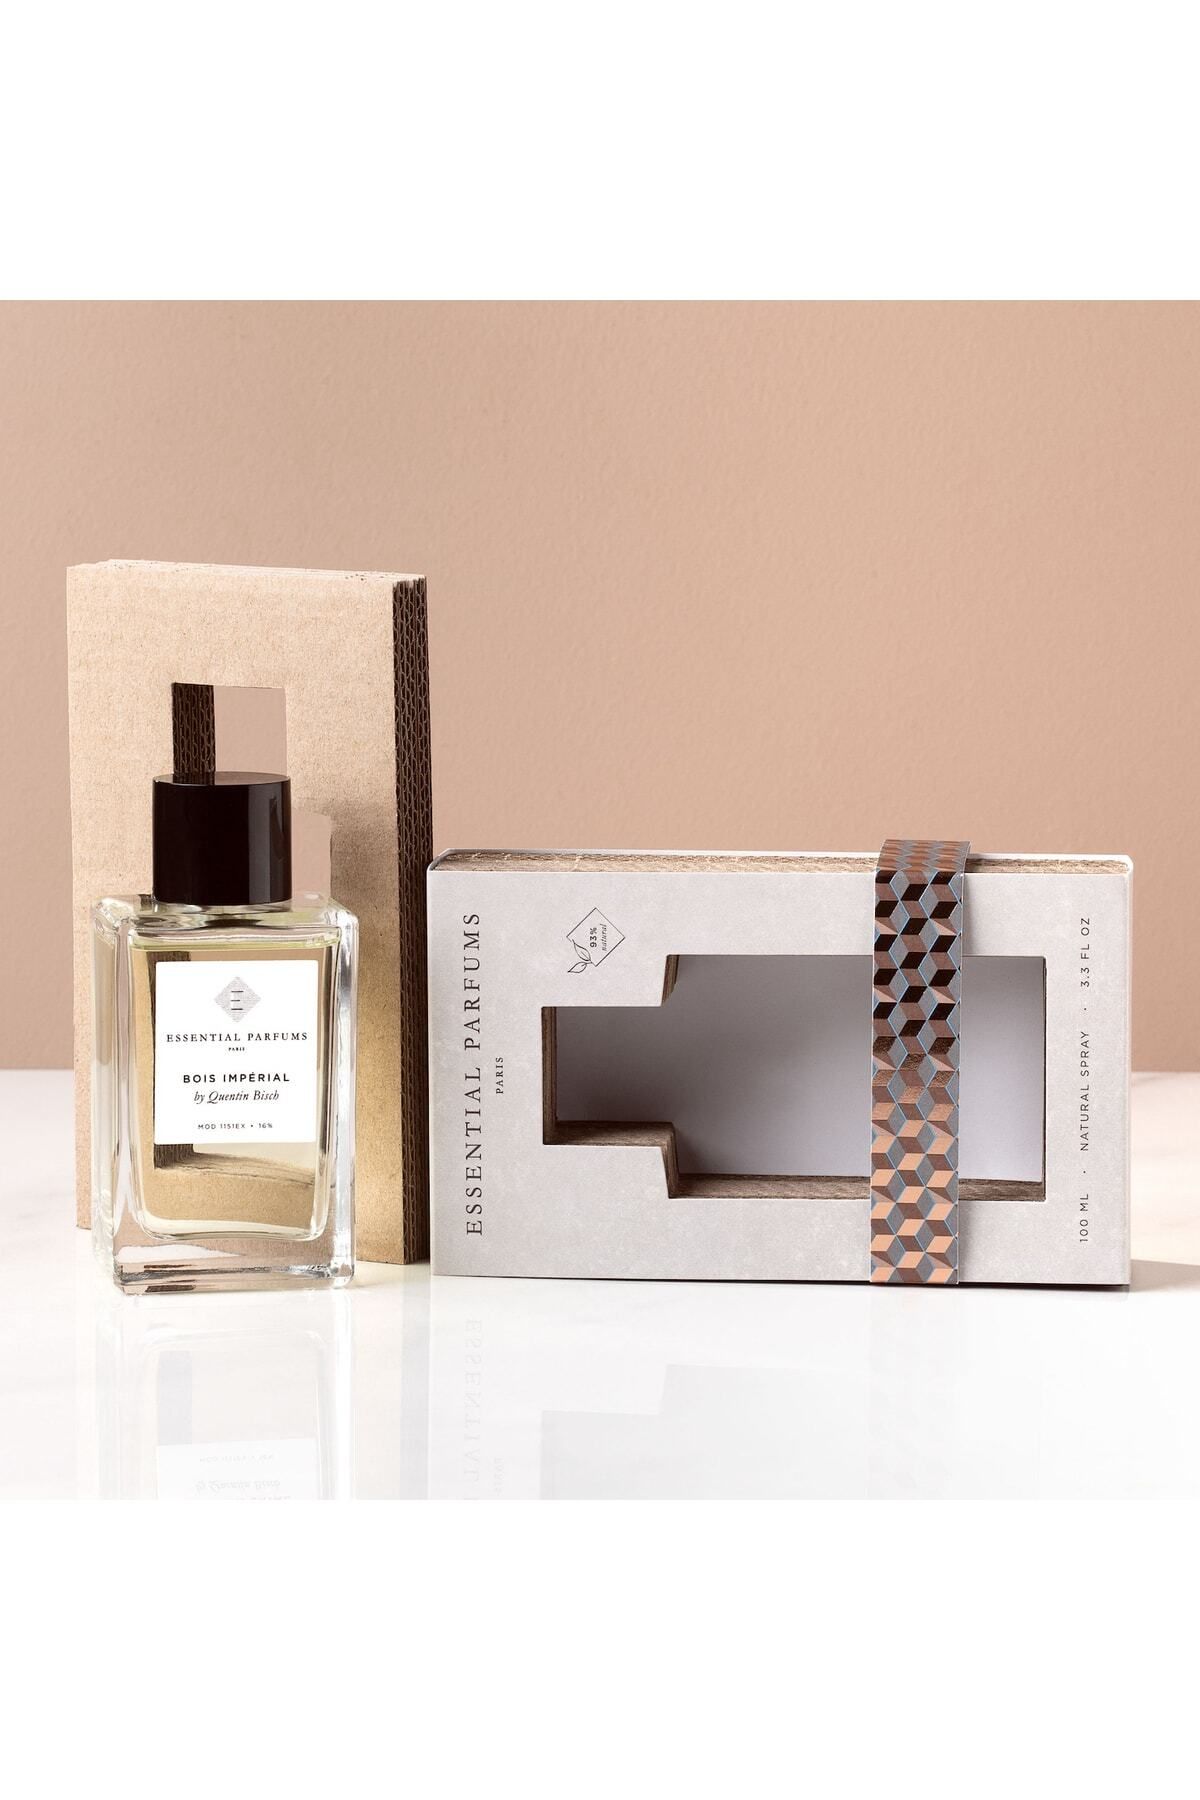 E ESSENTIAL PARFUMS PARIS Essential Parfums Bois Imperial Edp 100 ml Refıllable